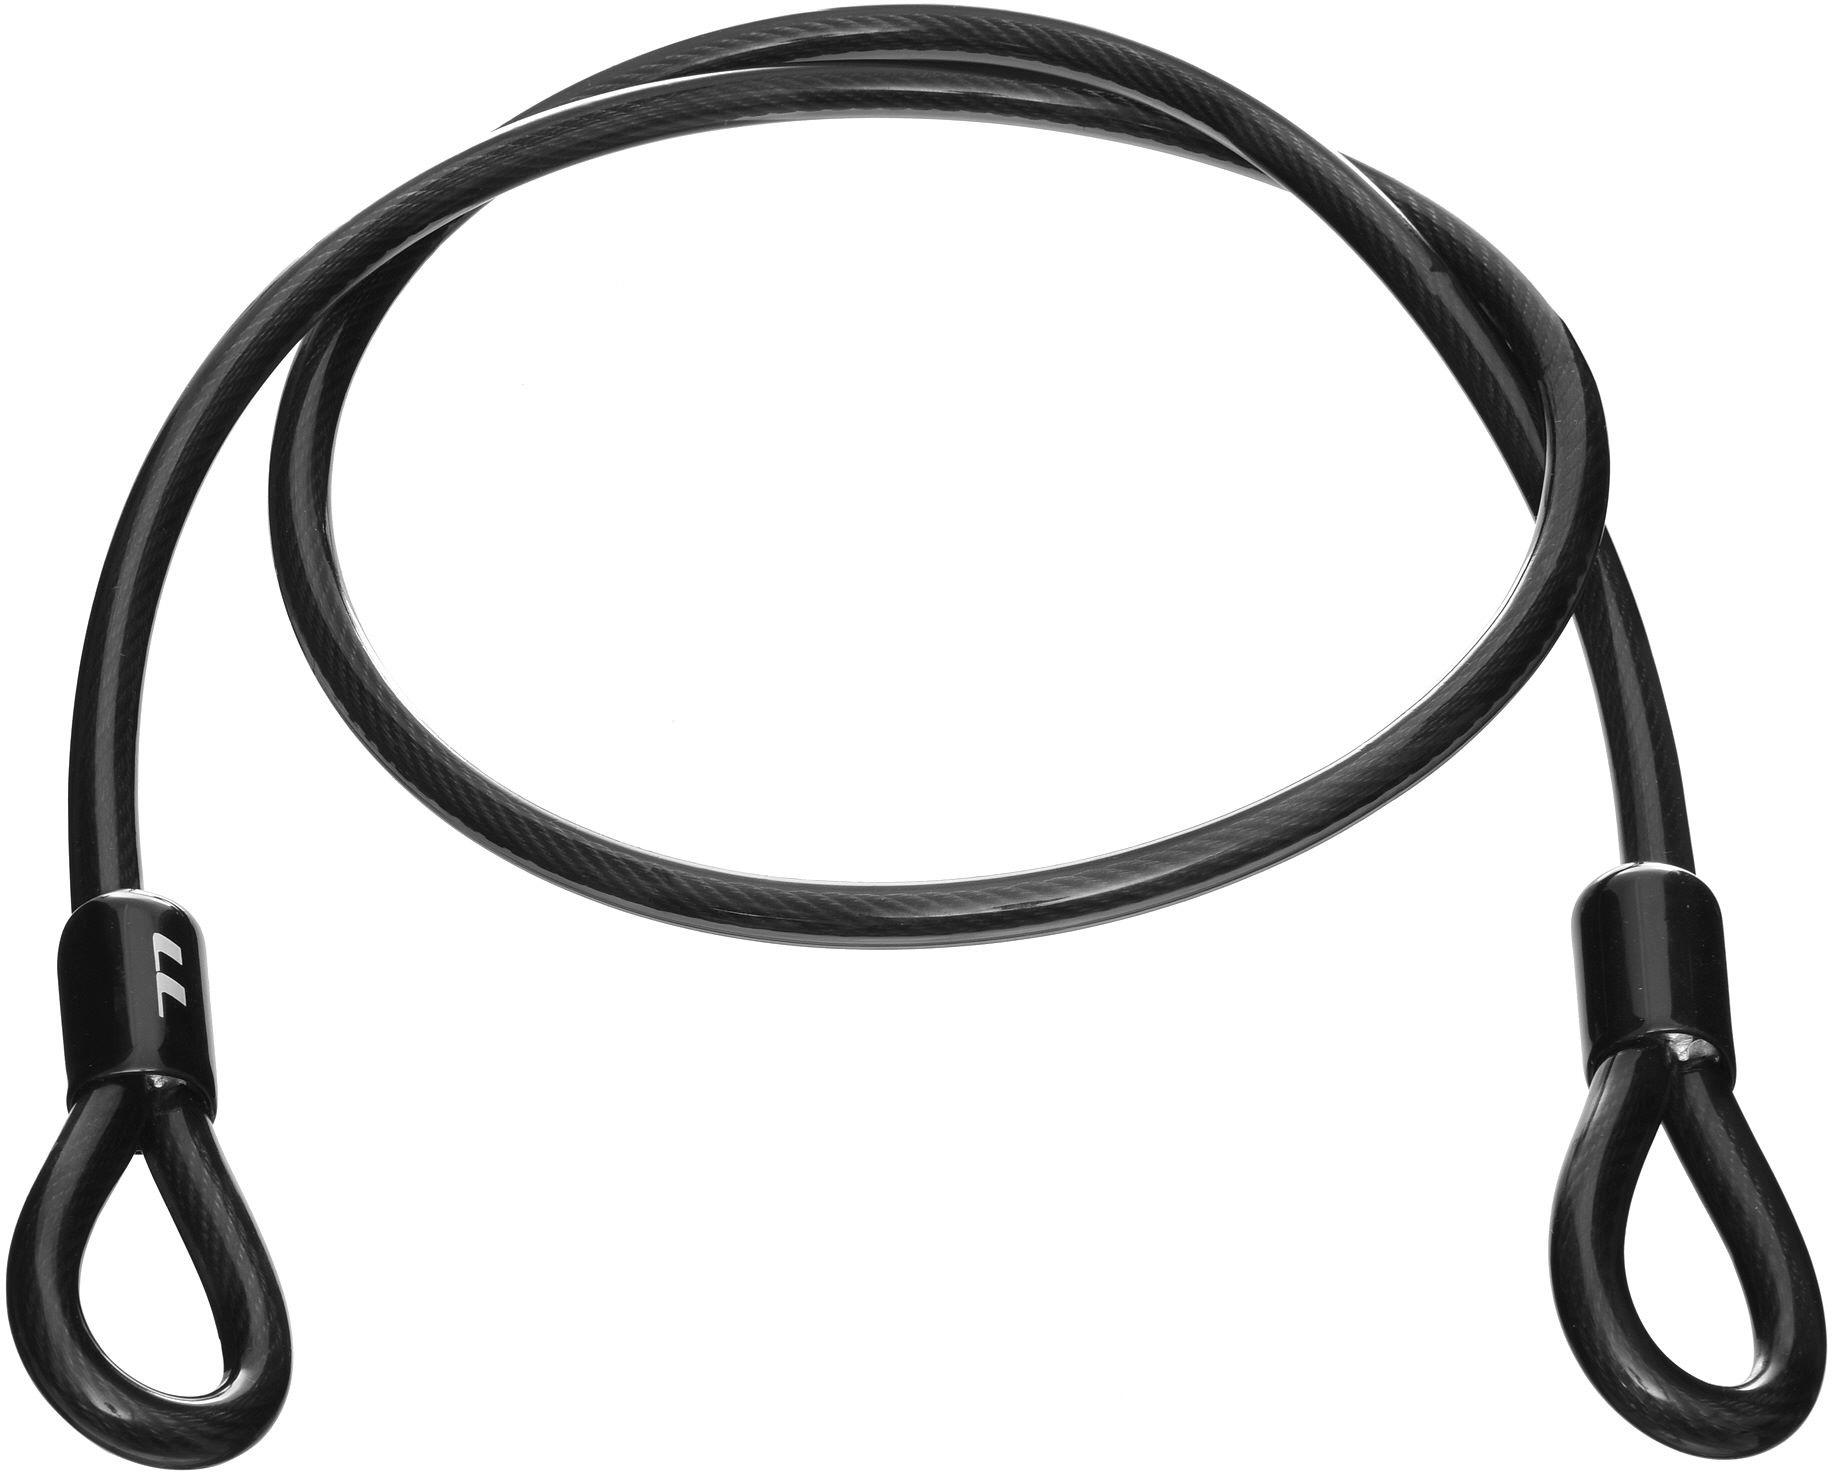 Lifeline Extension Loop Bike Cable Lock  Black